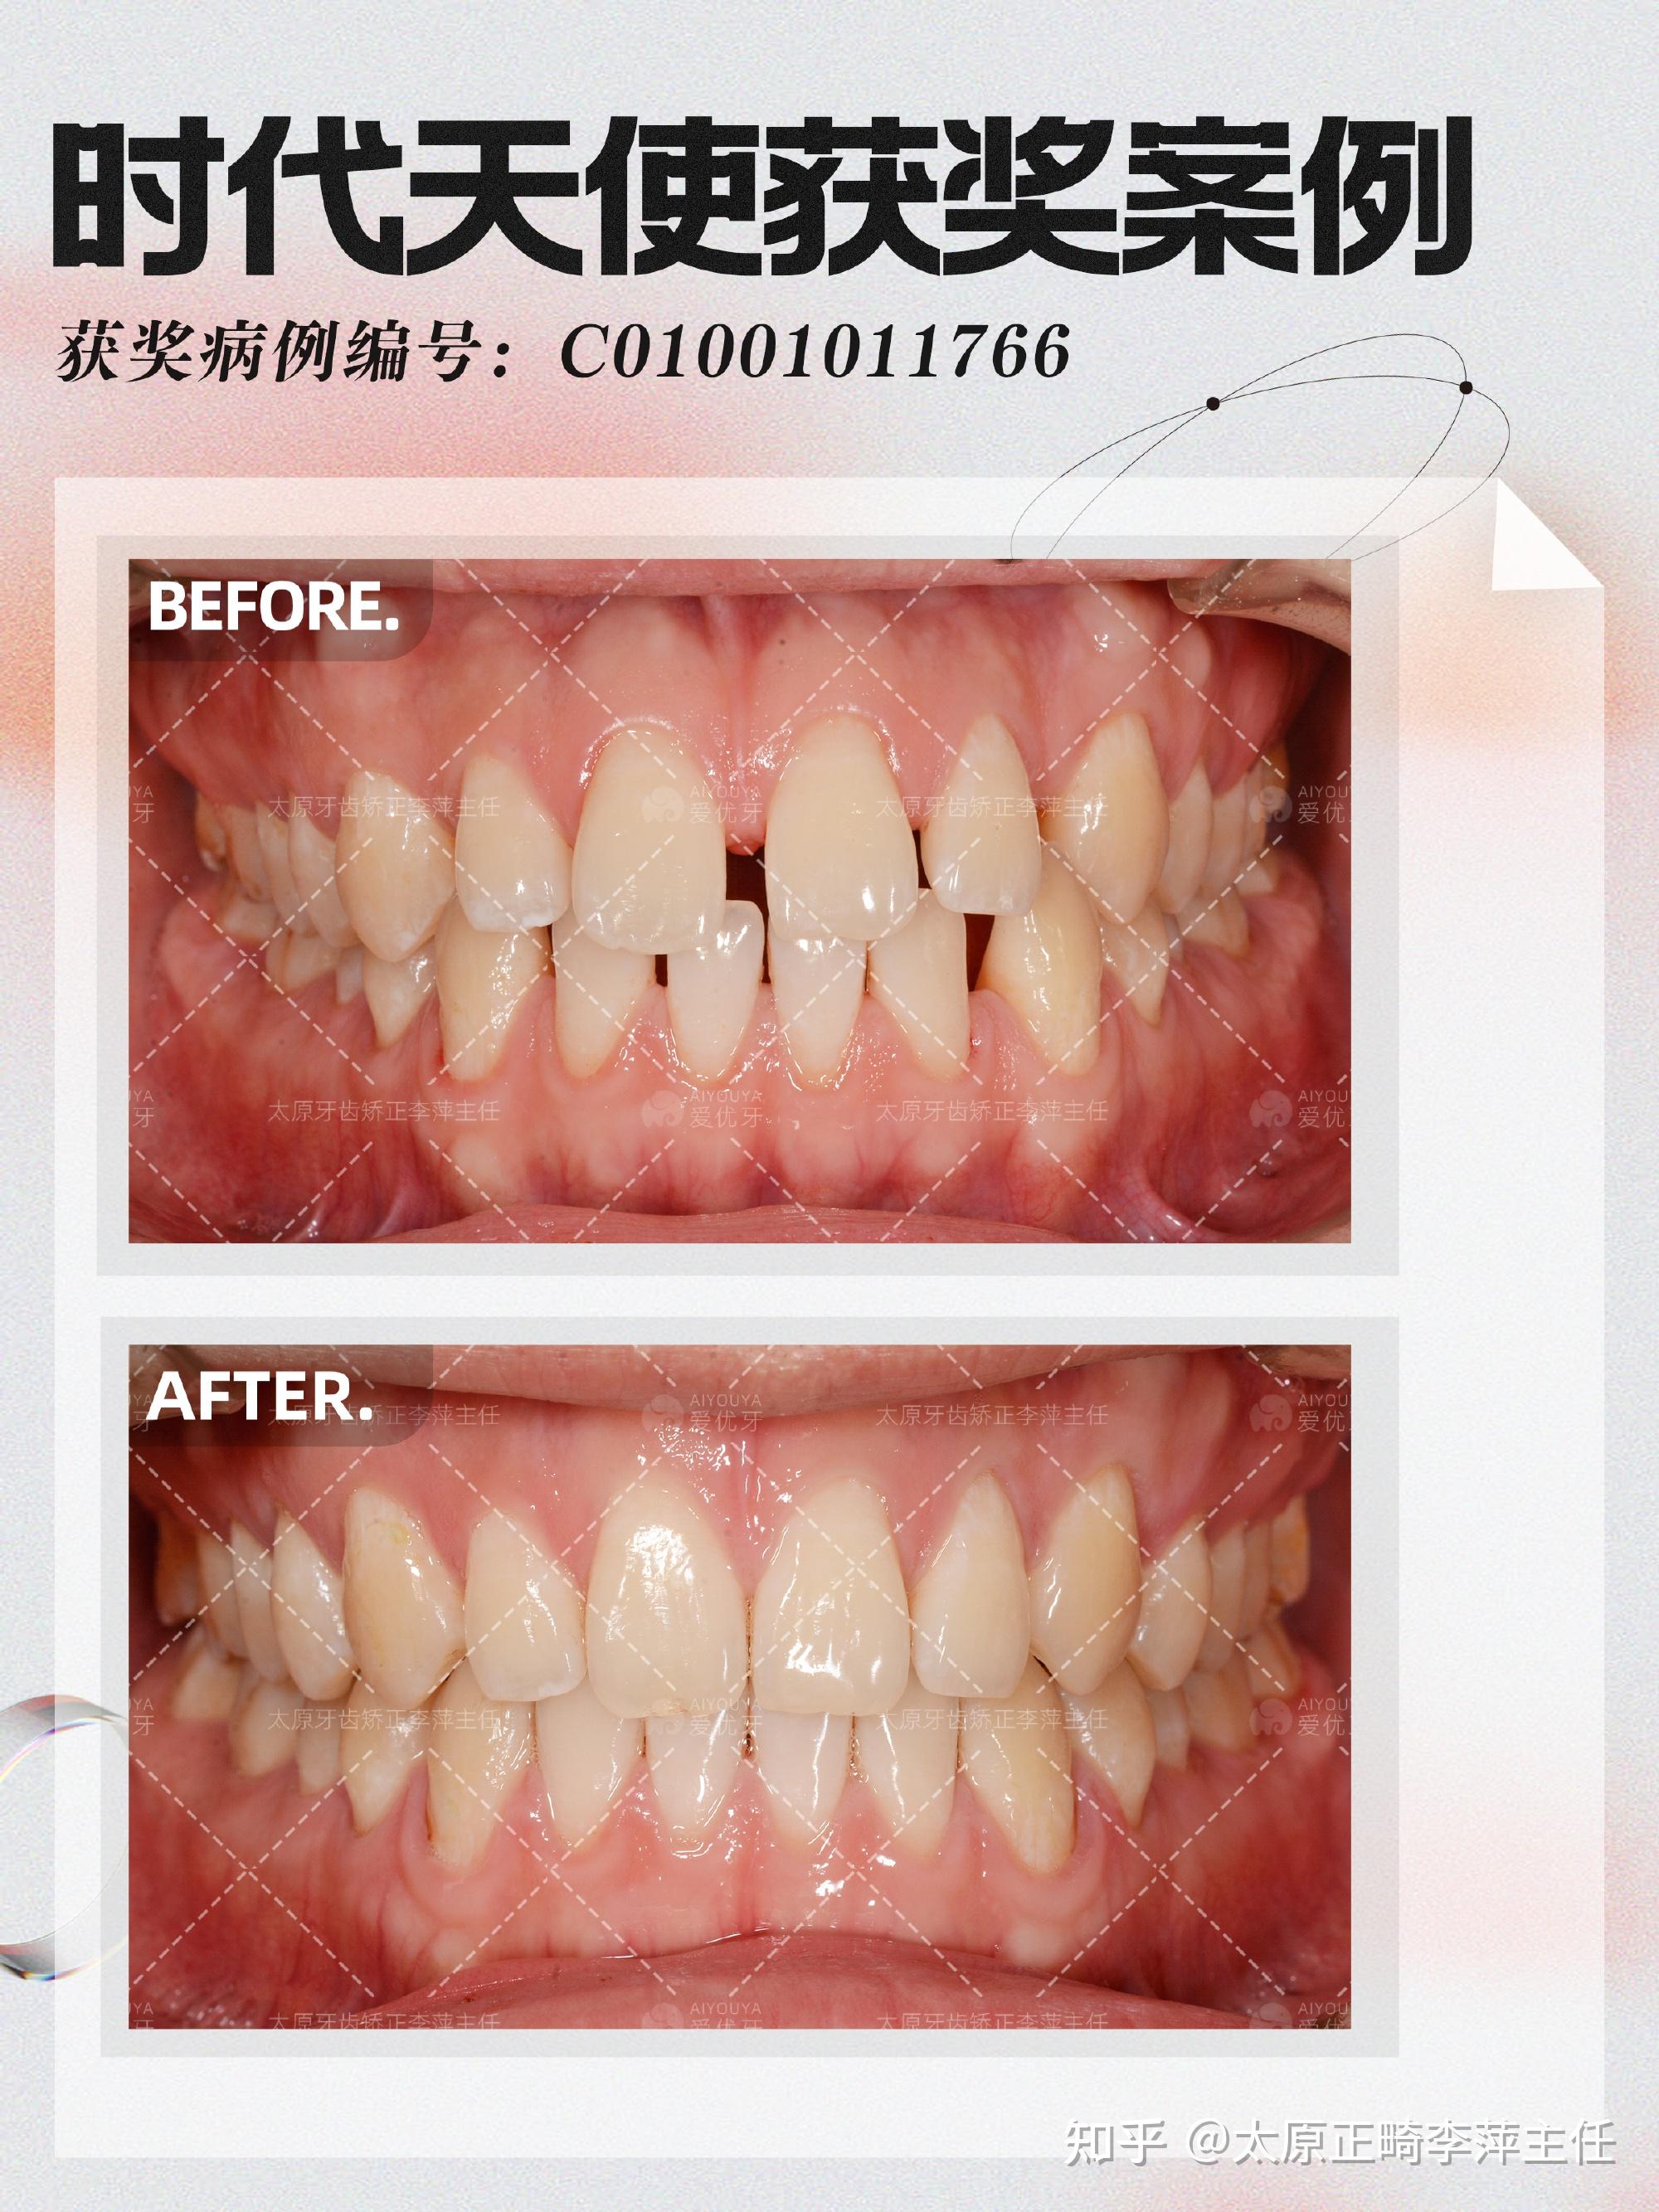 《正畸案例65-67:几例简单的牙齿排齐关闭缝隙》